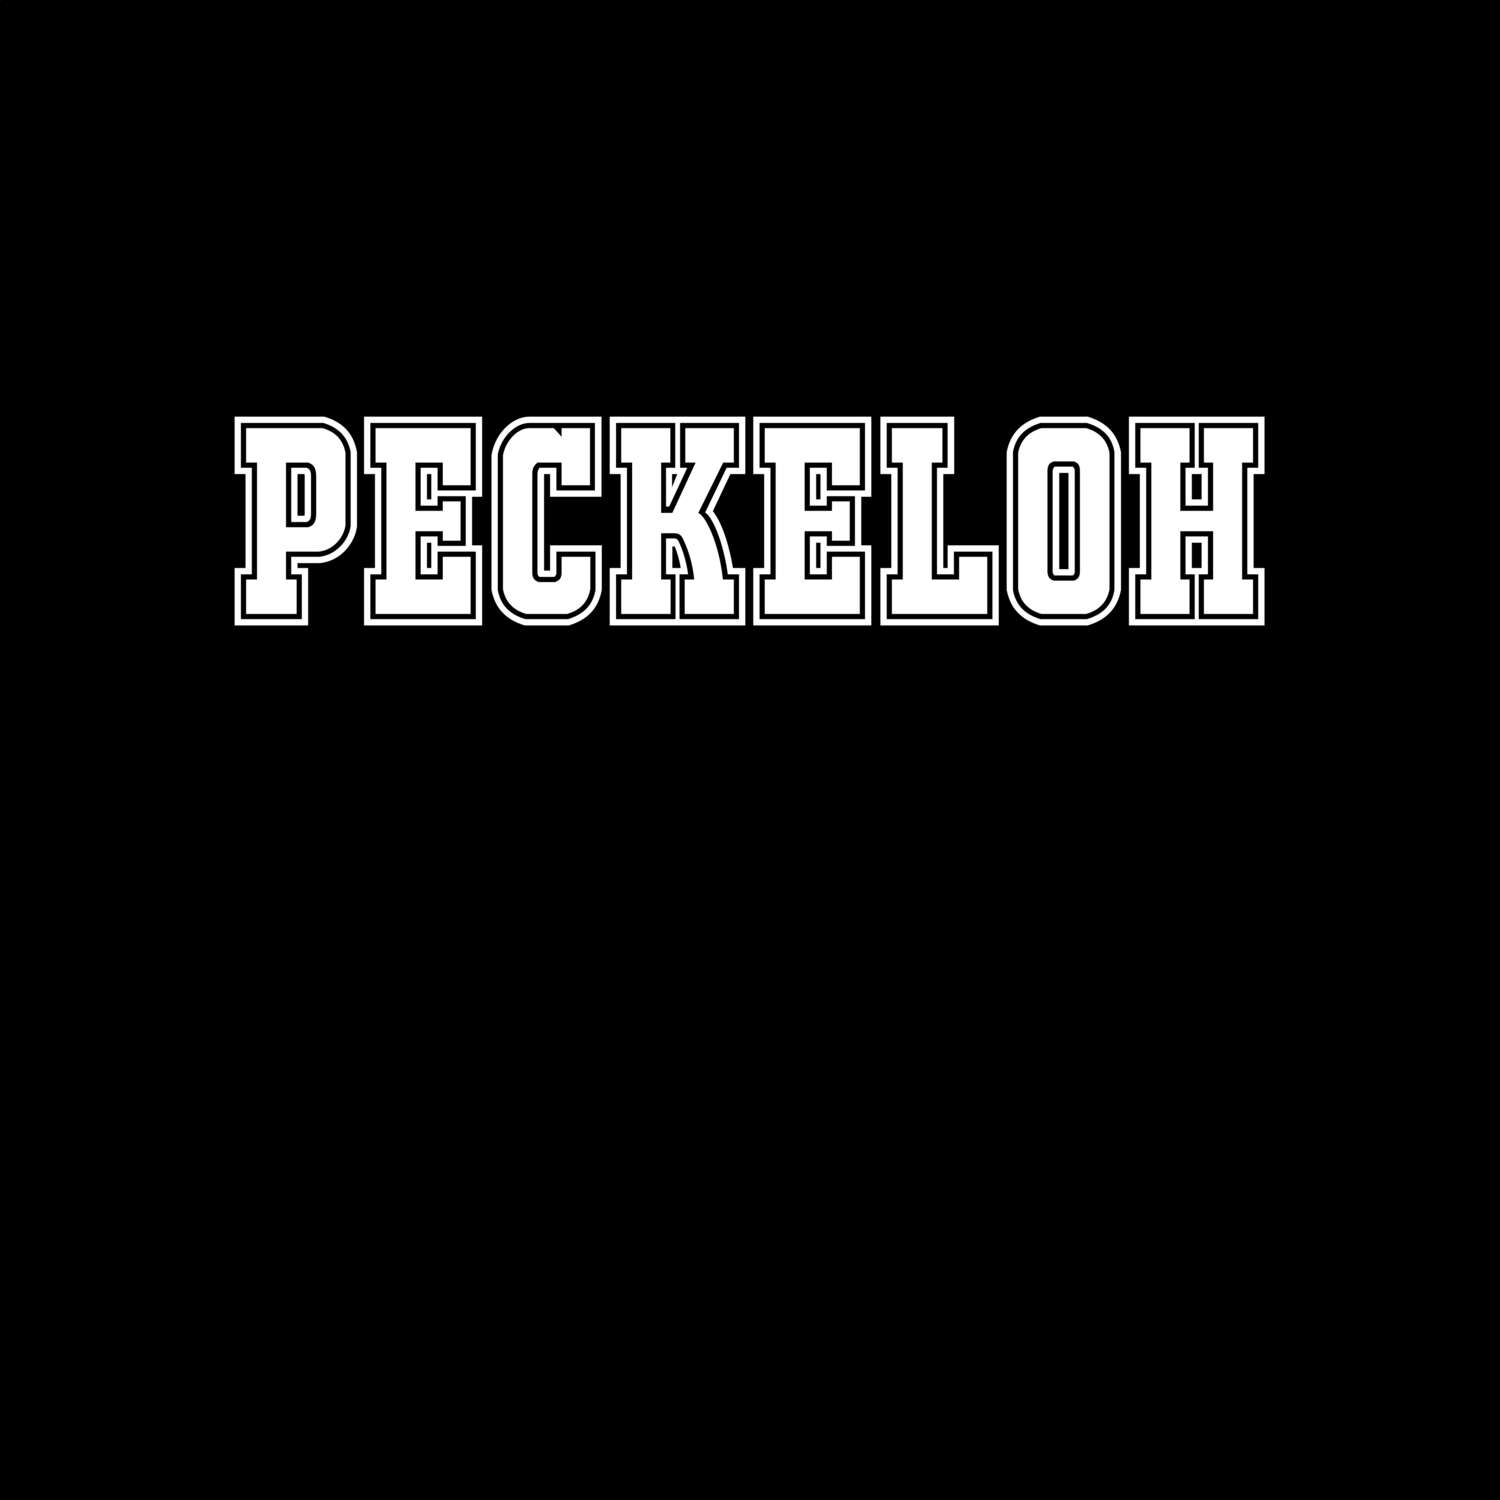 Peckeloh T-Shirt »Classic«